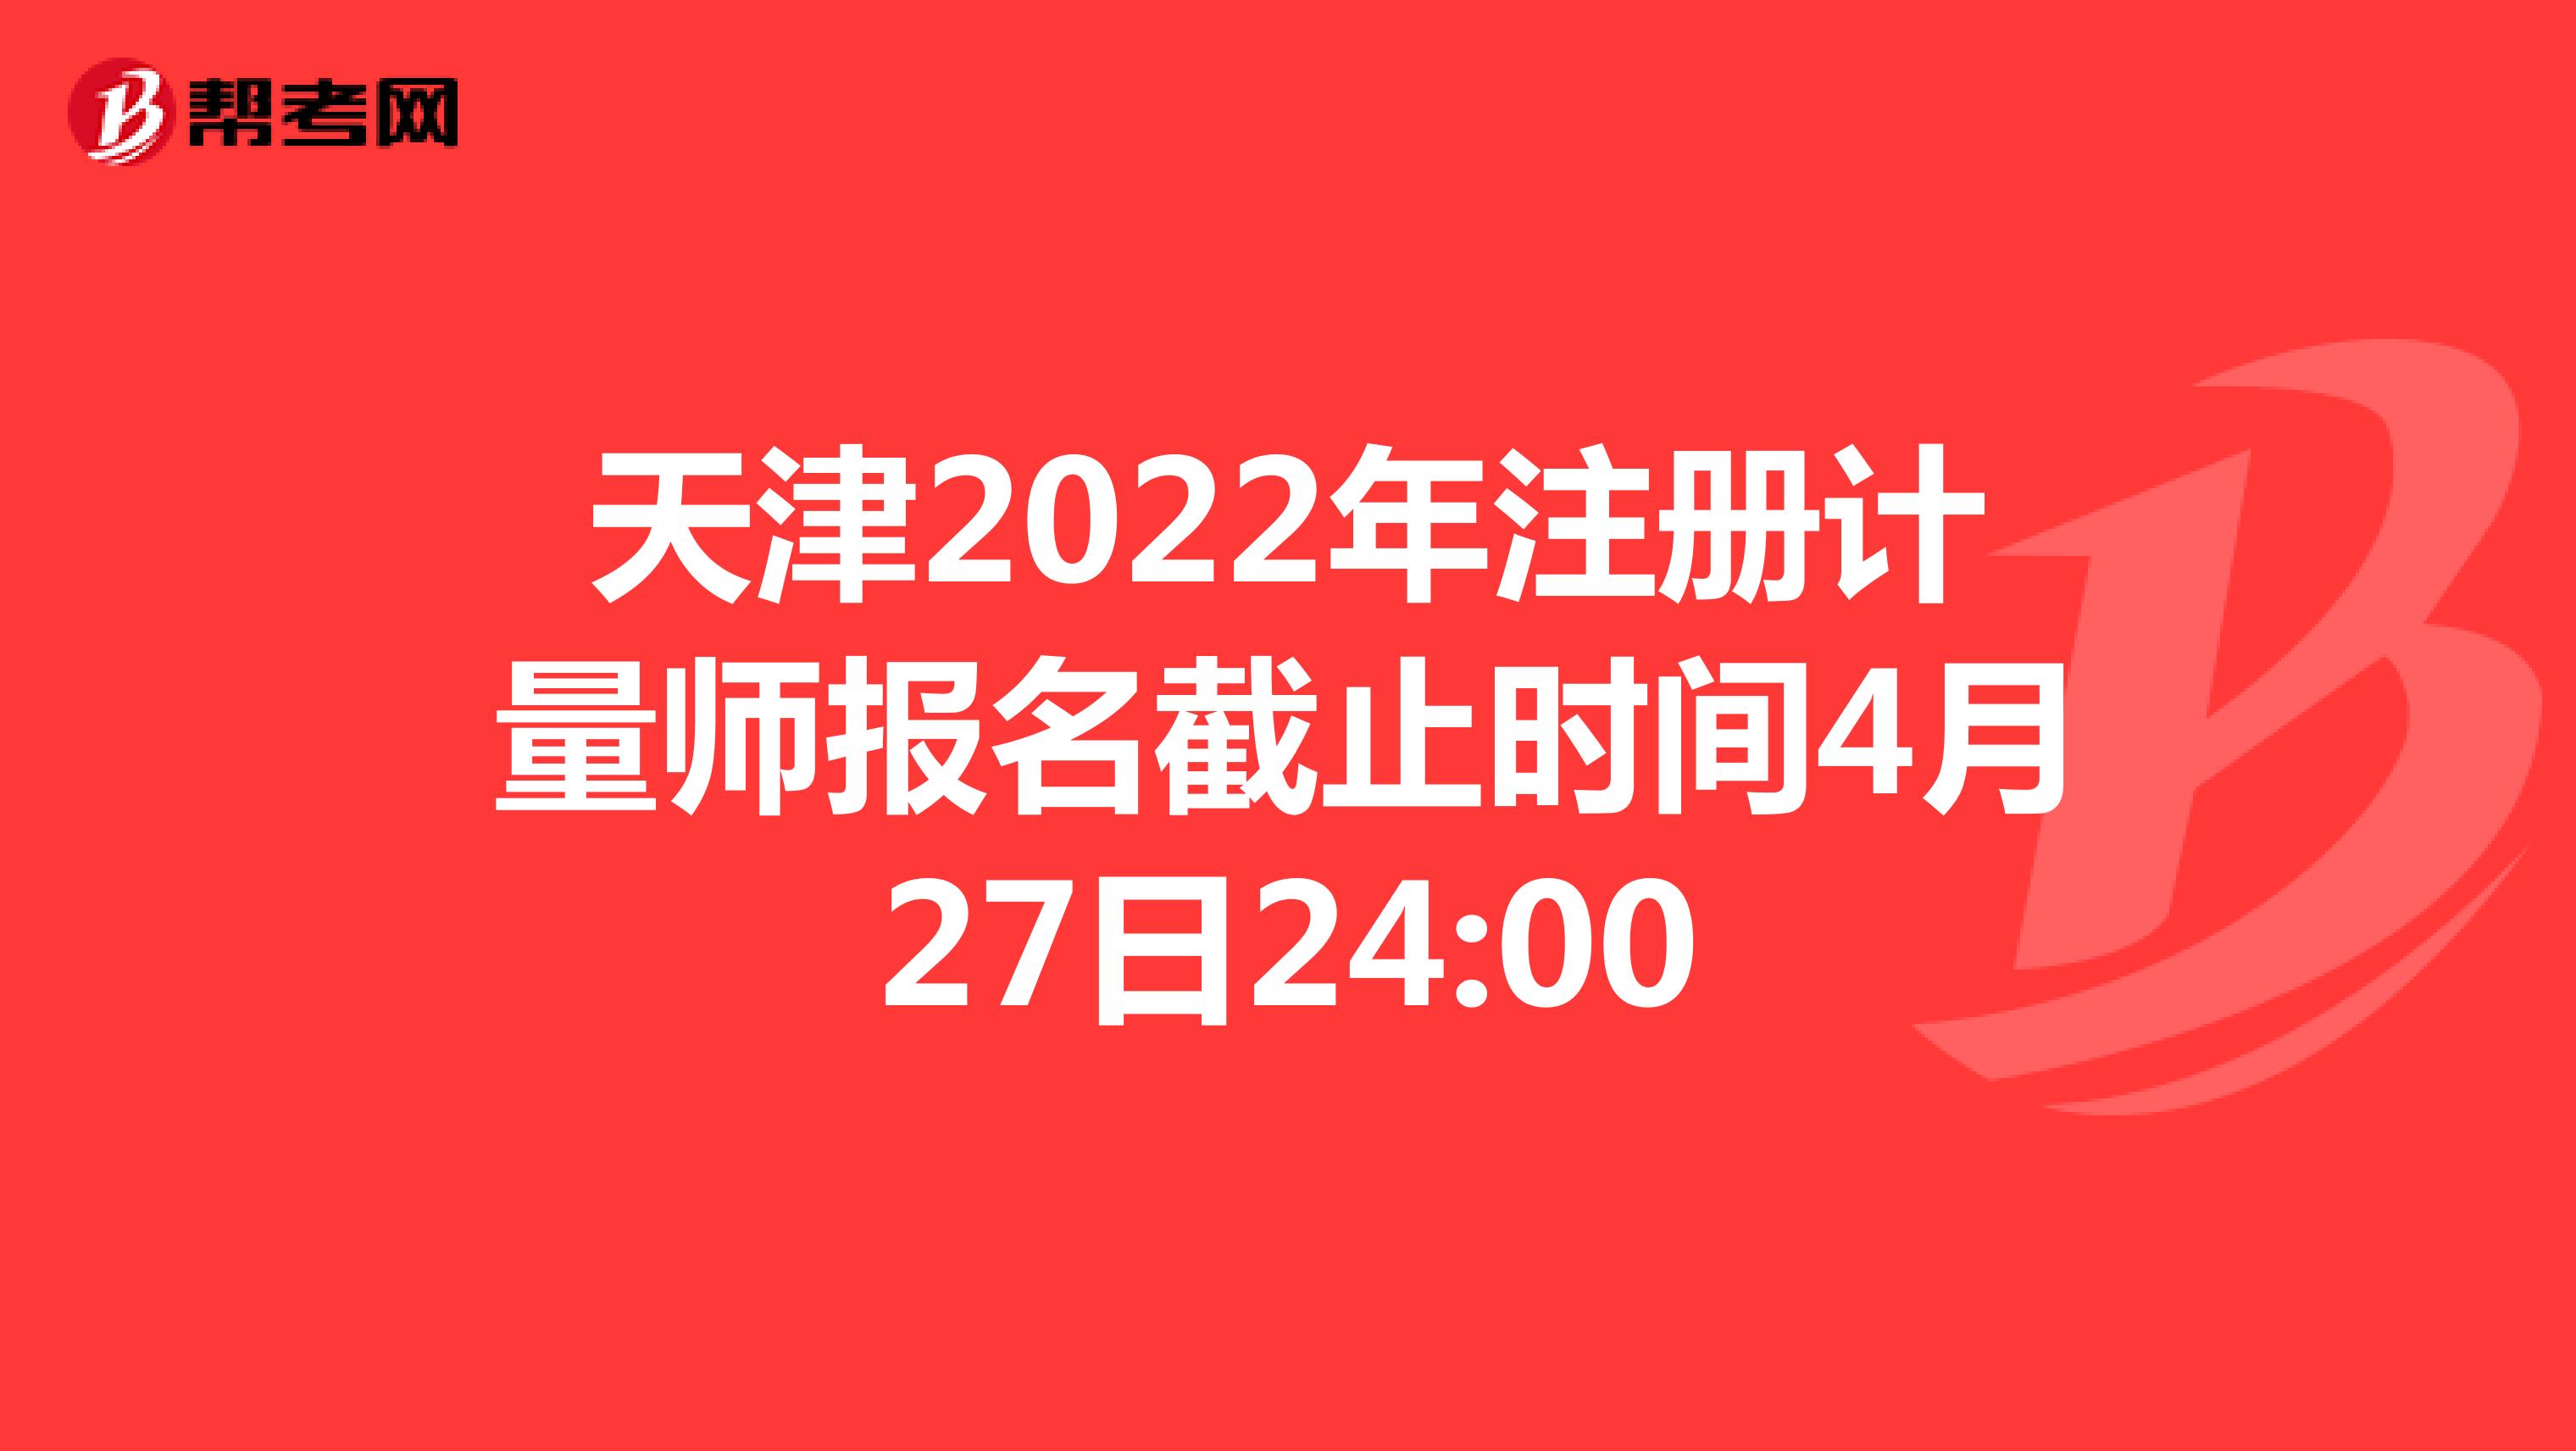 天津2022年注册计量师报名截止时间4月27日24:00